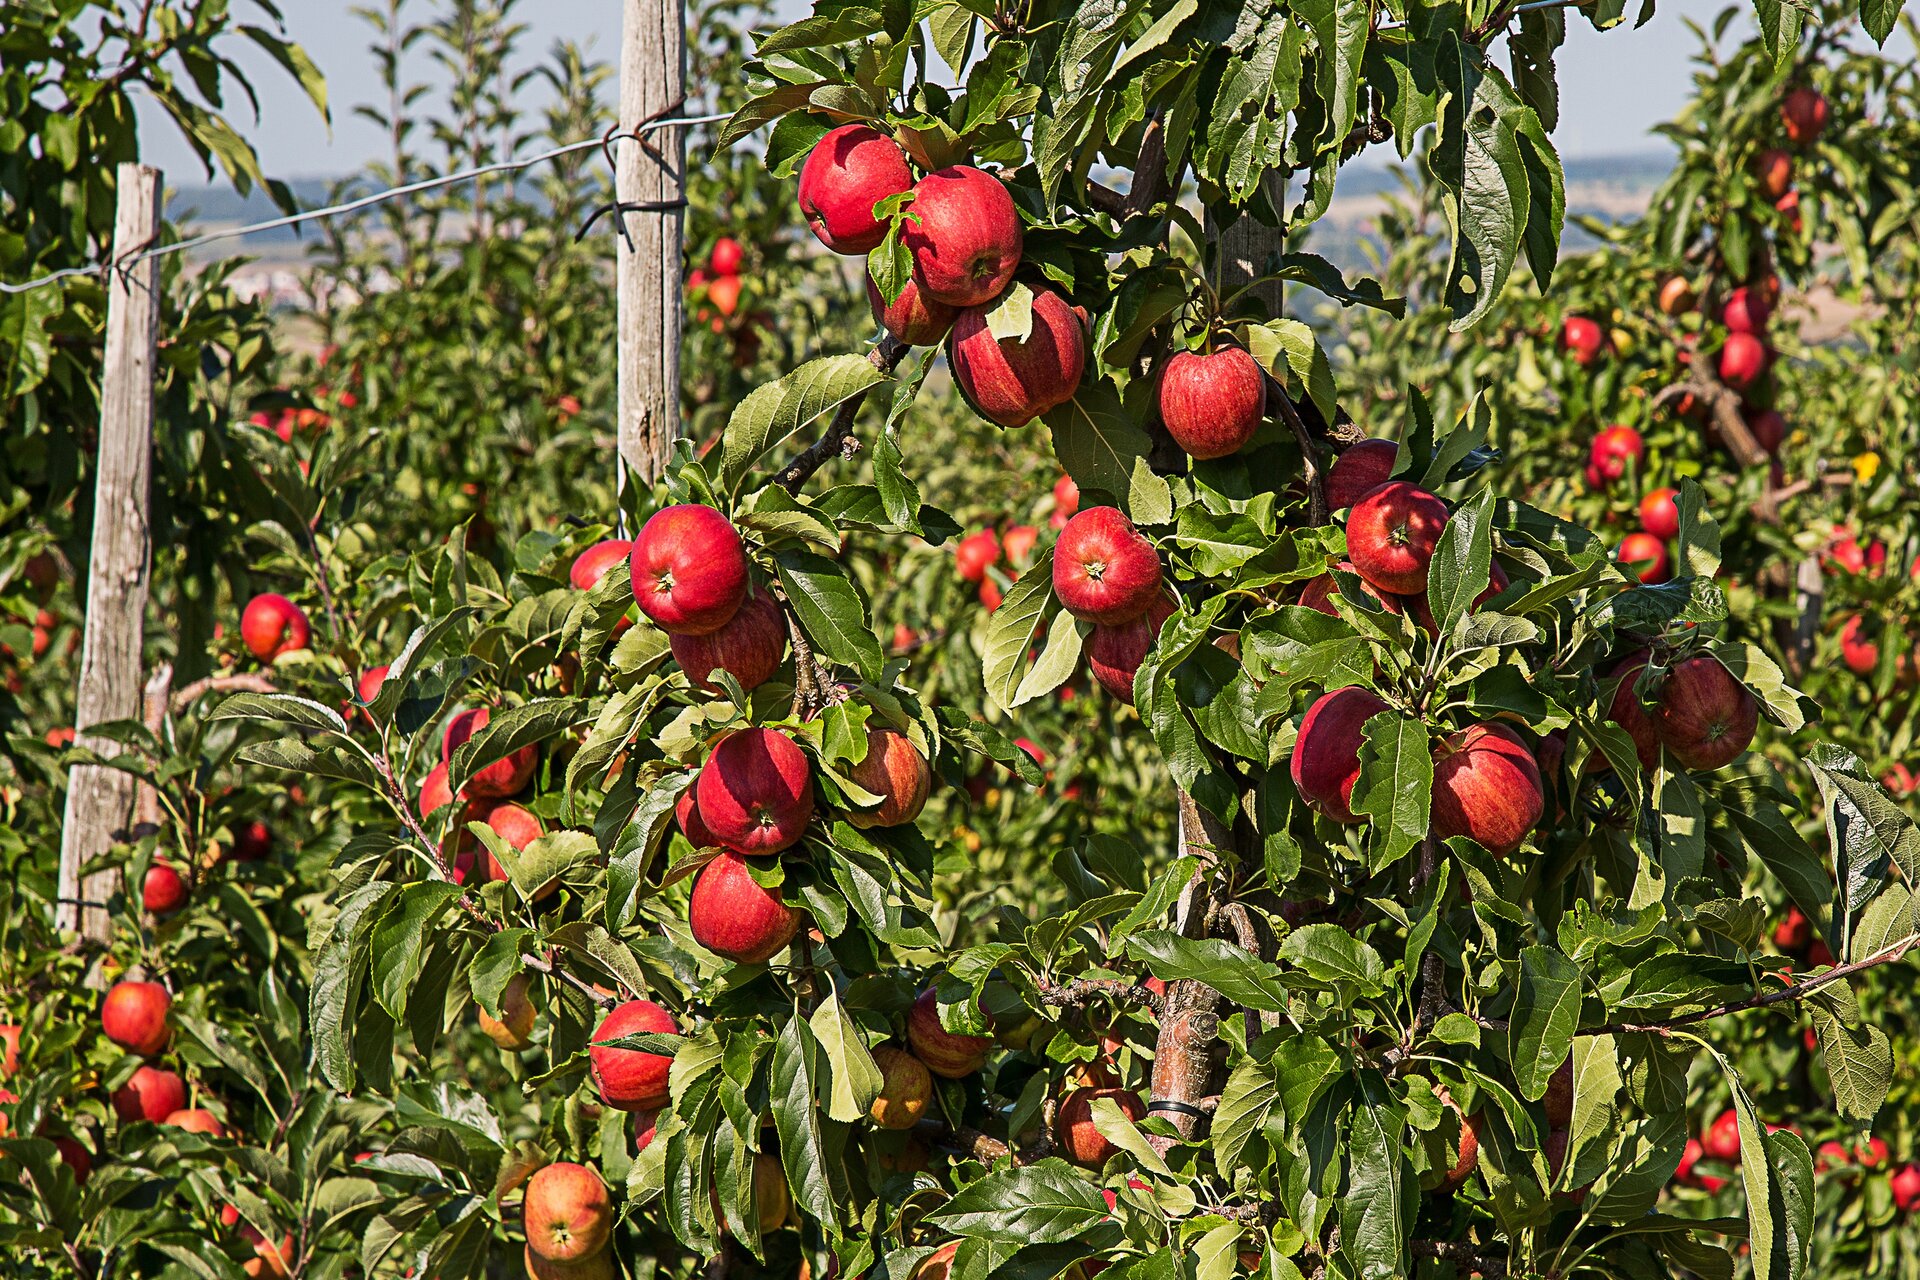 Zdjęcie przedstawia sad z drzewami jabłoni. Na drzewach widać liczne, dojrzewające jabłka.